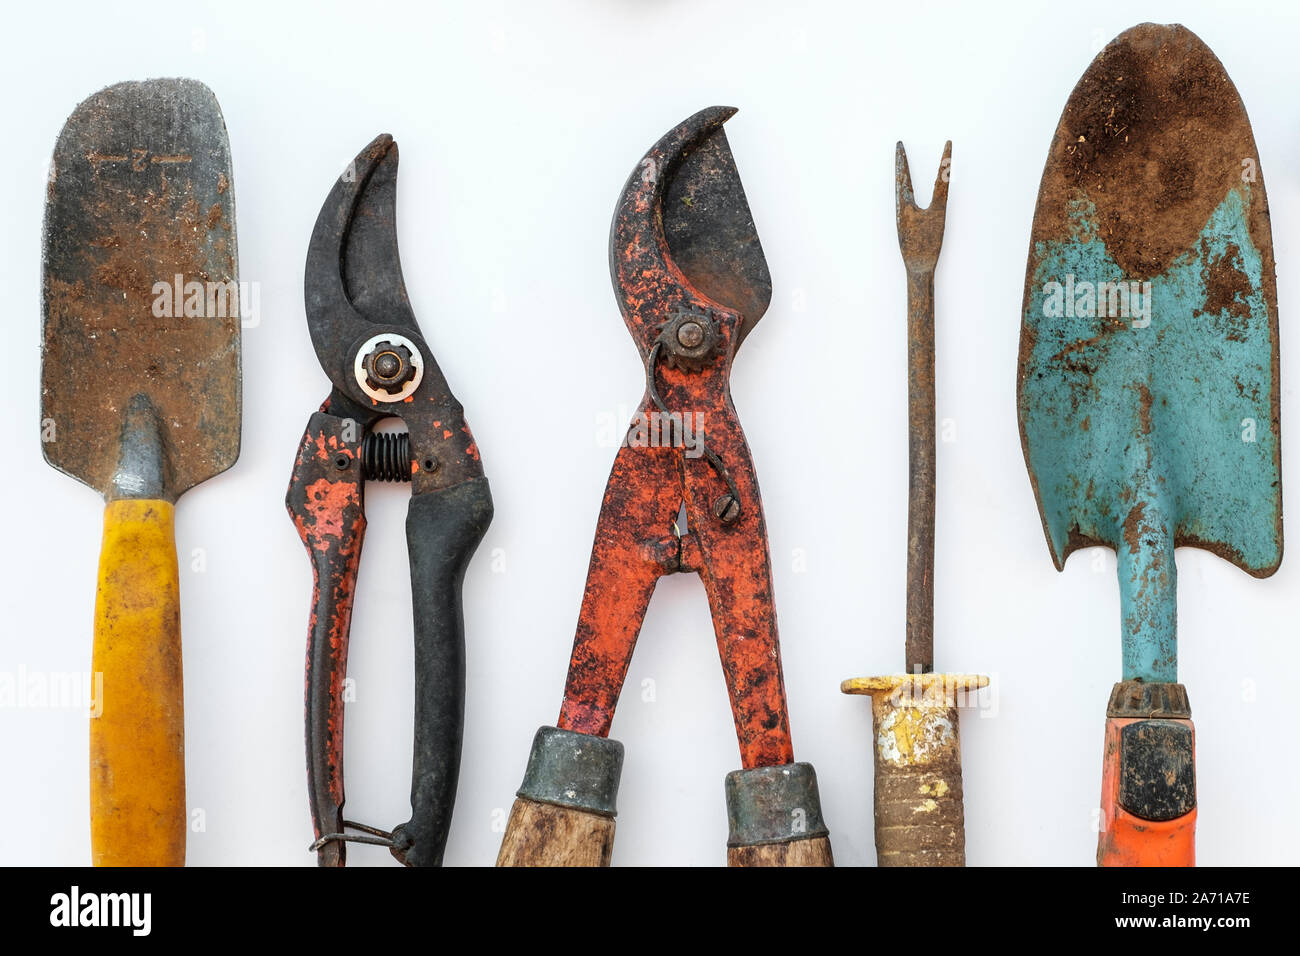 old tools, vintage garden tool set on white background Stock Photo